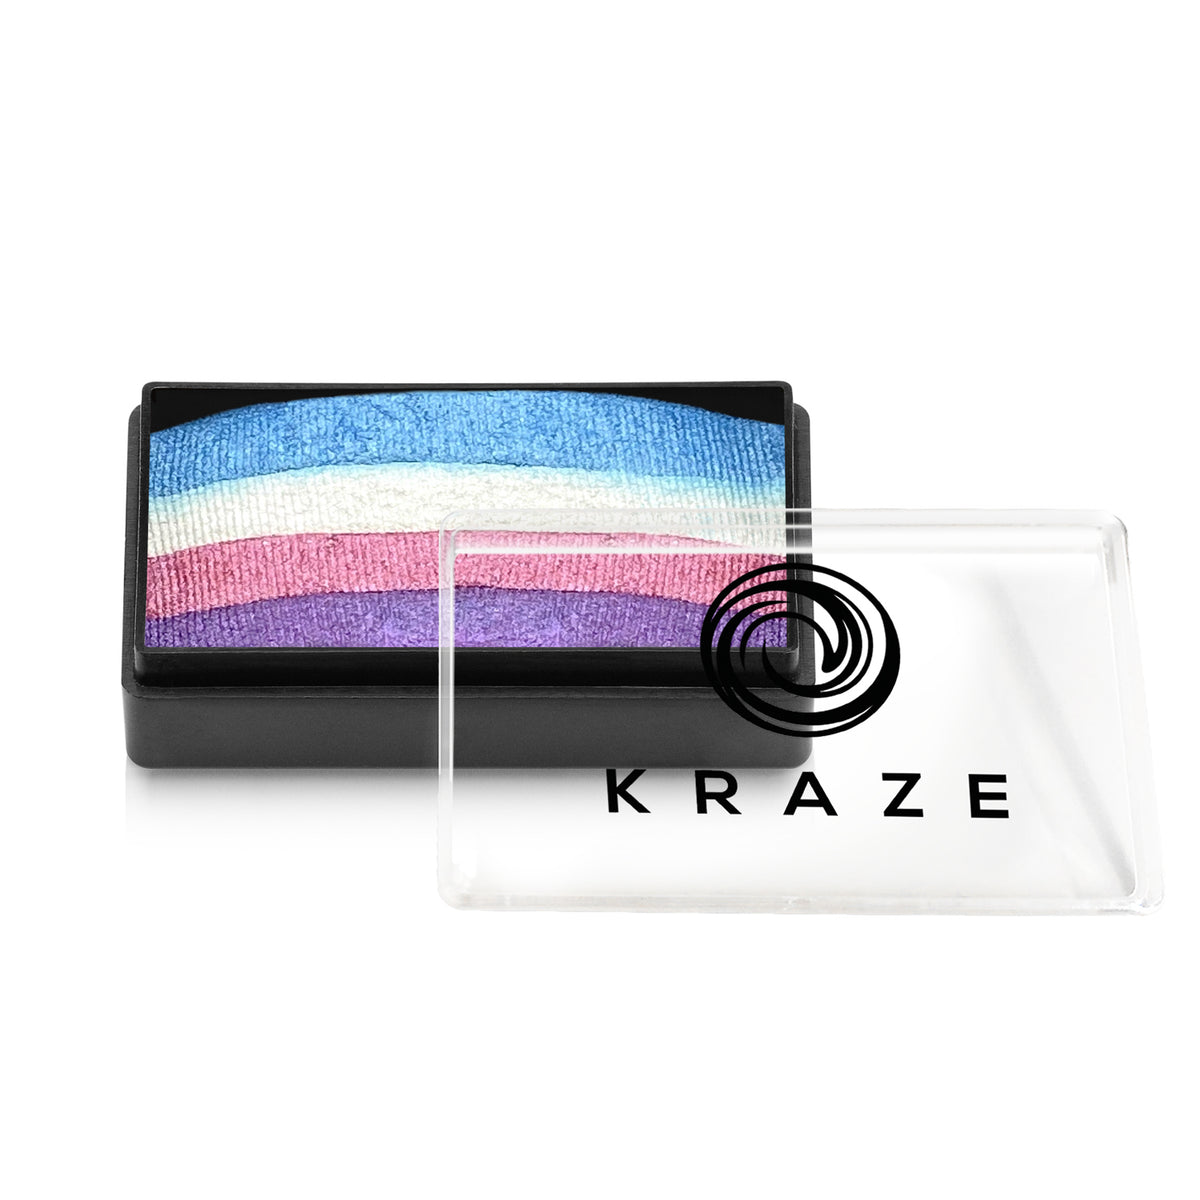 Kraze FX Domed Pearl One Stroke Cake - Unicorn Shimmer (25 gm)